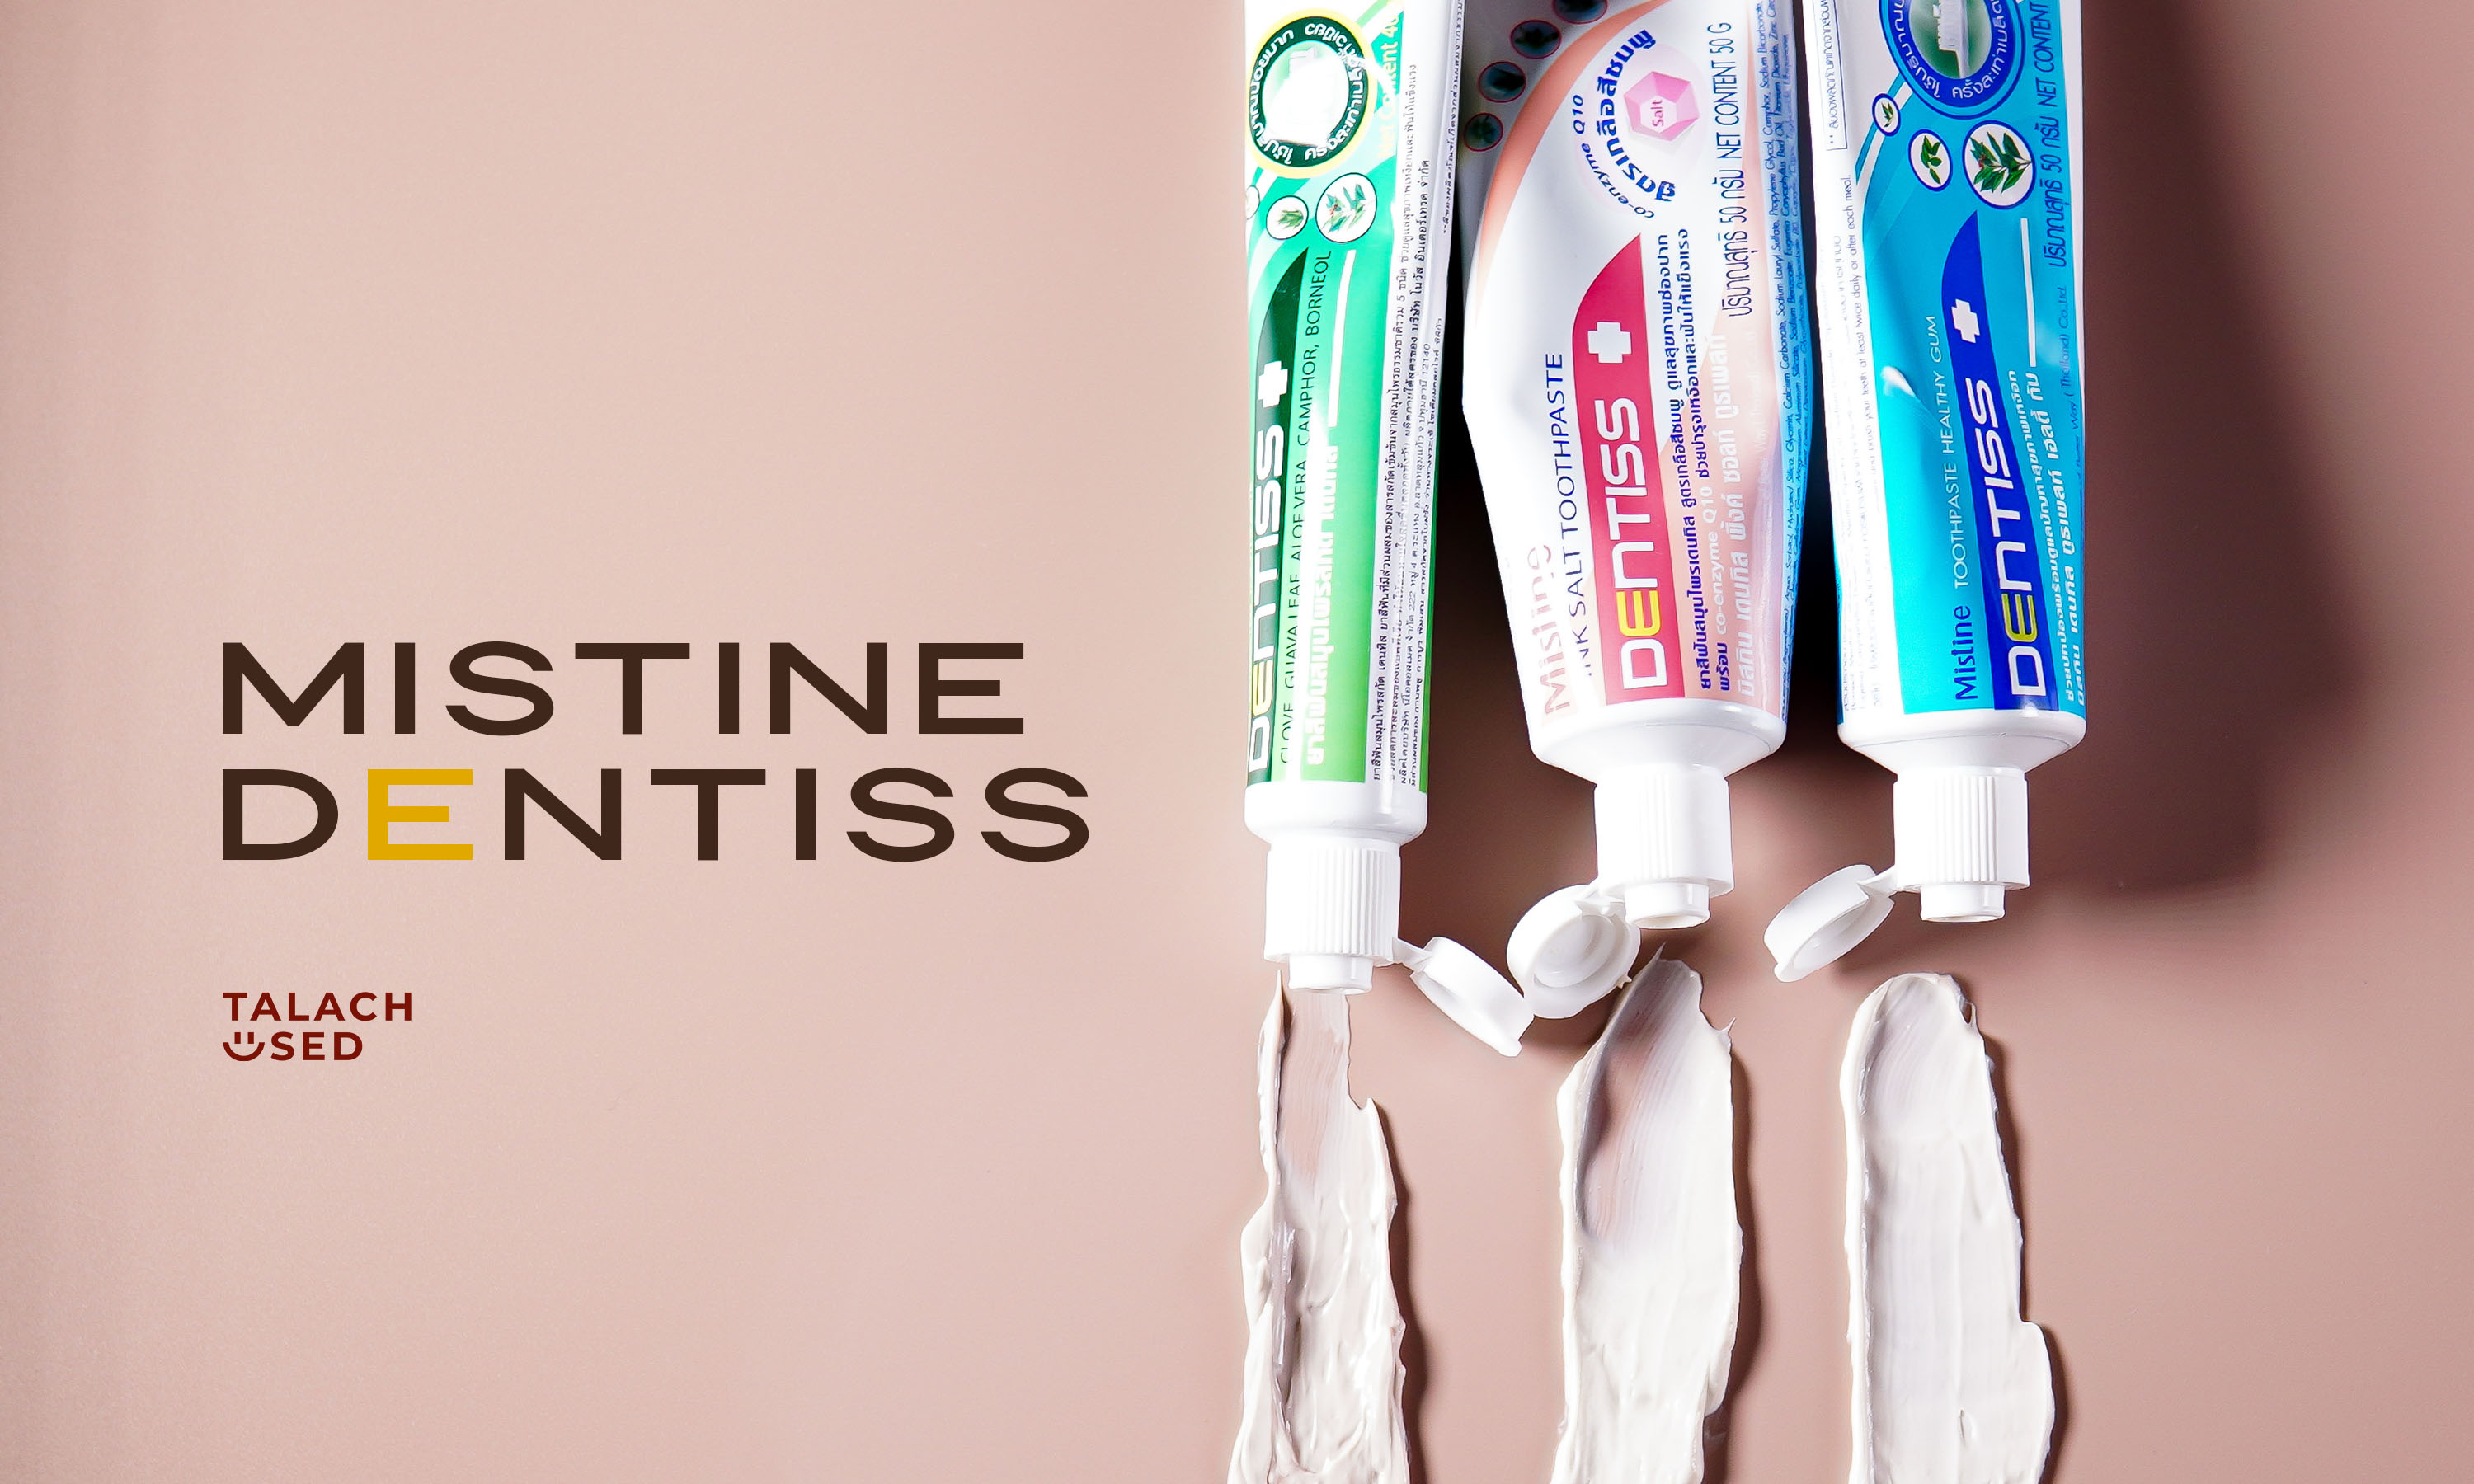 ยาสีฟัน toothpaste ซื้อ ที่ไหน ถูก pantip